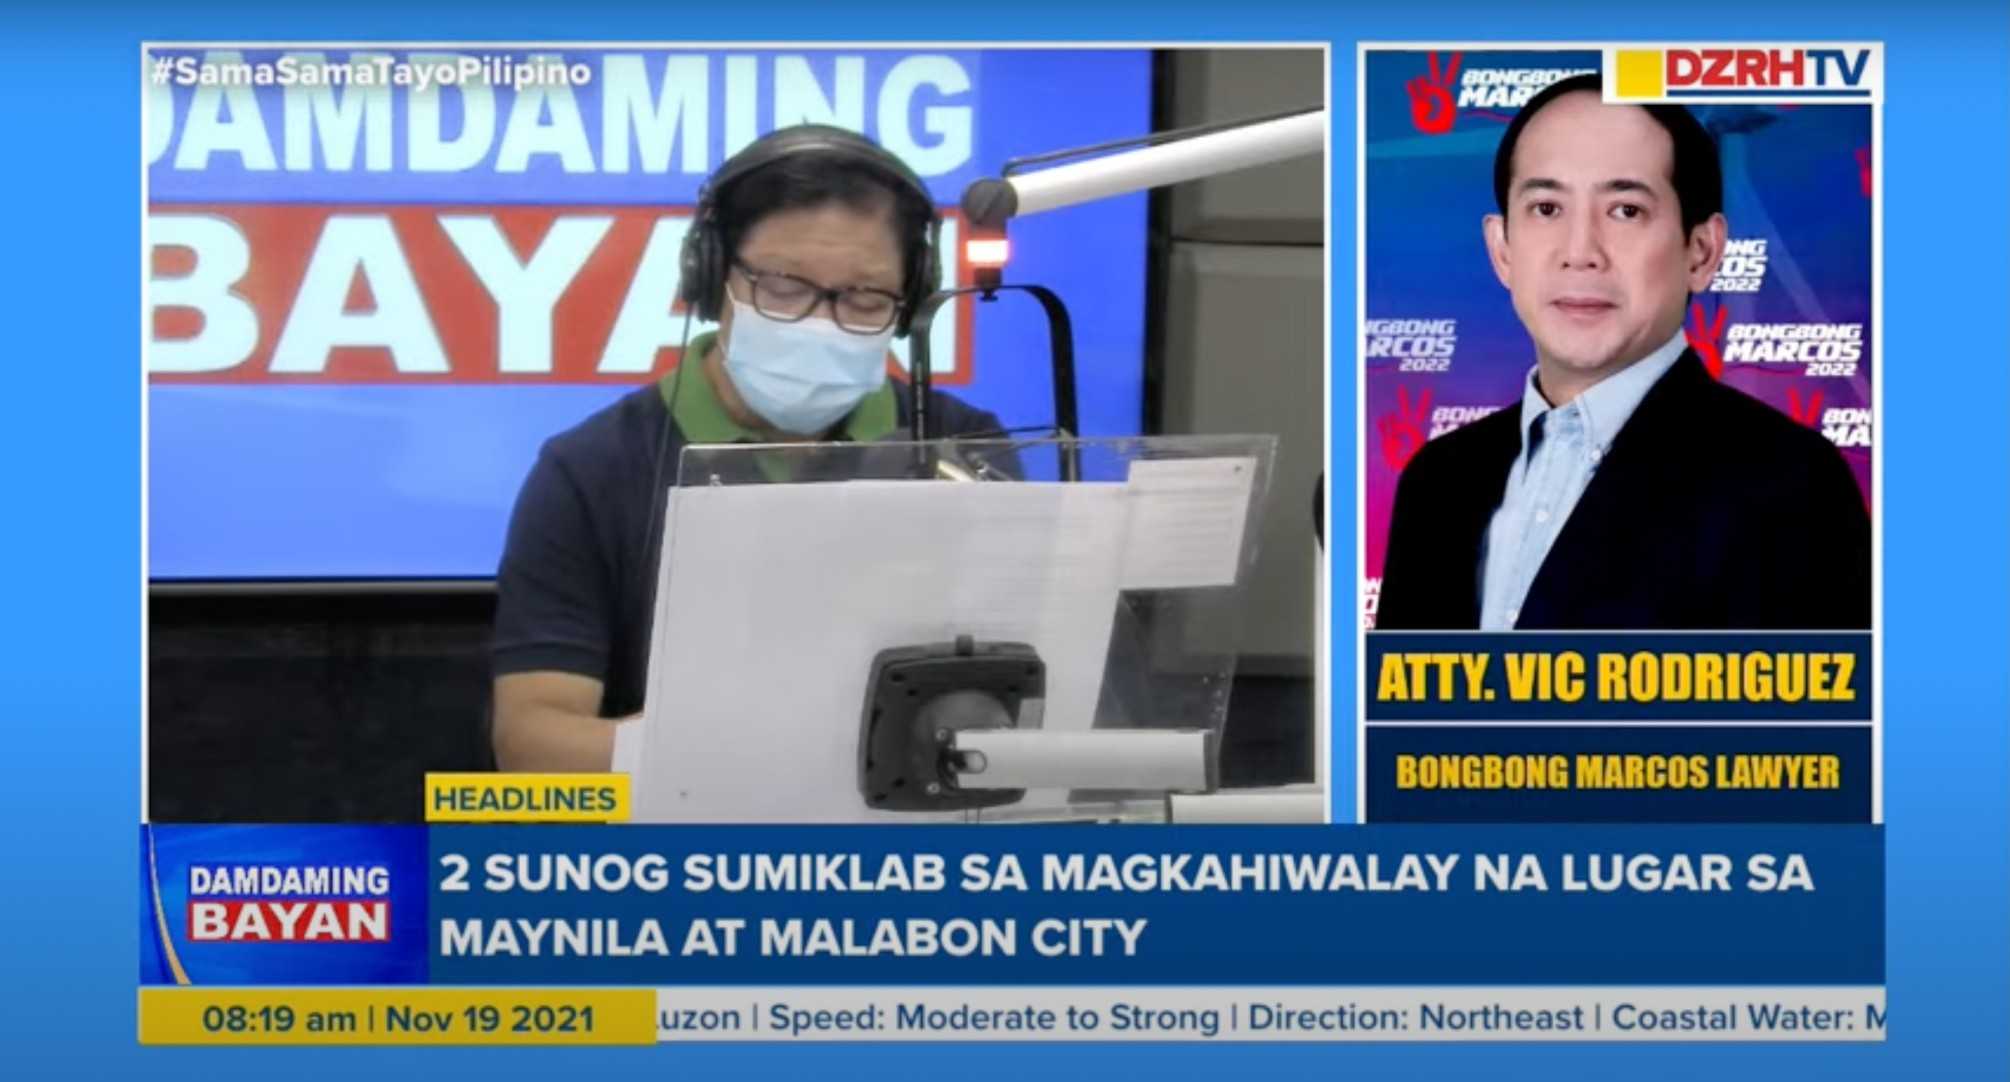 BBM camp on Prez Duterte's blind item: 'We don't feel alluded to'